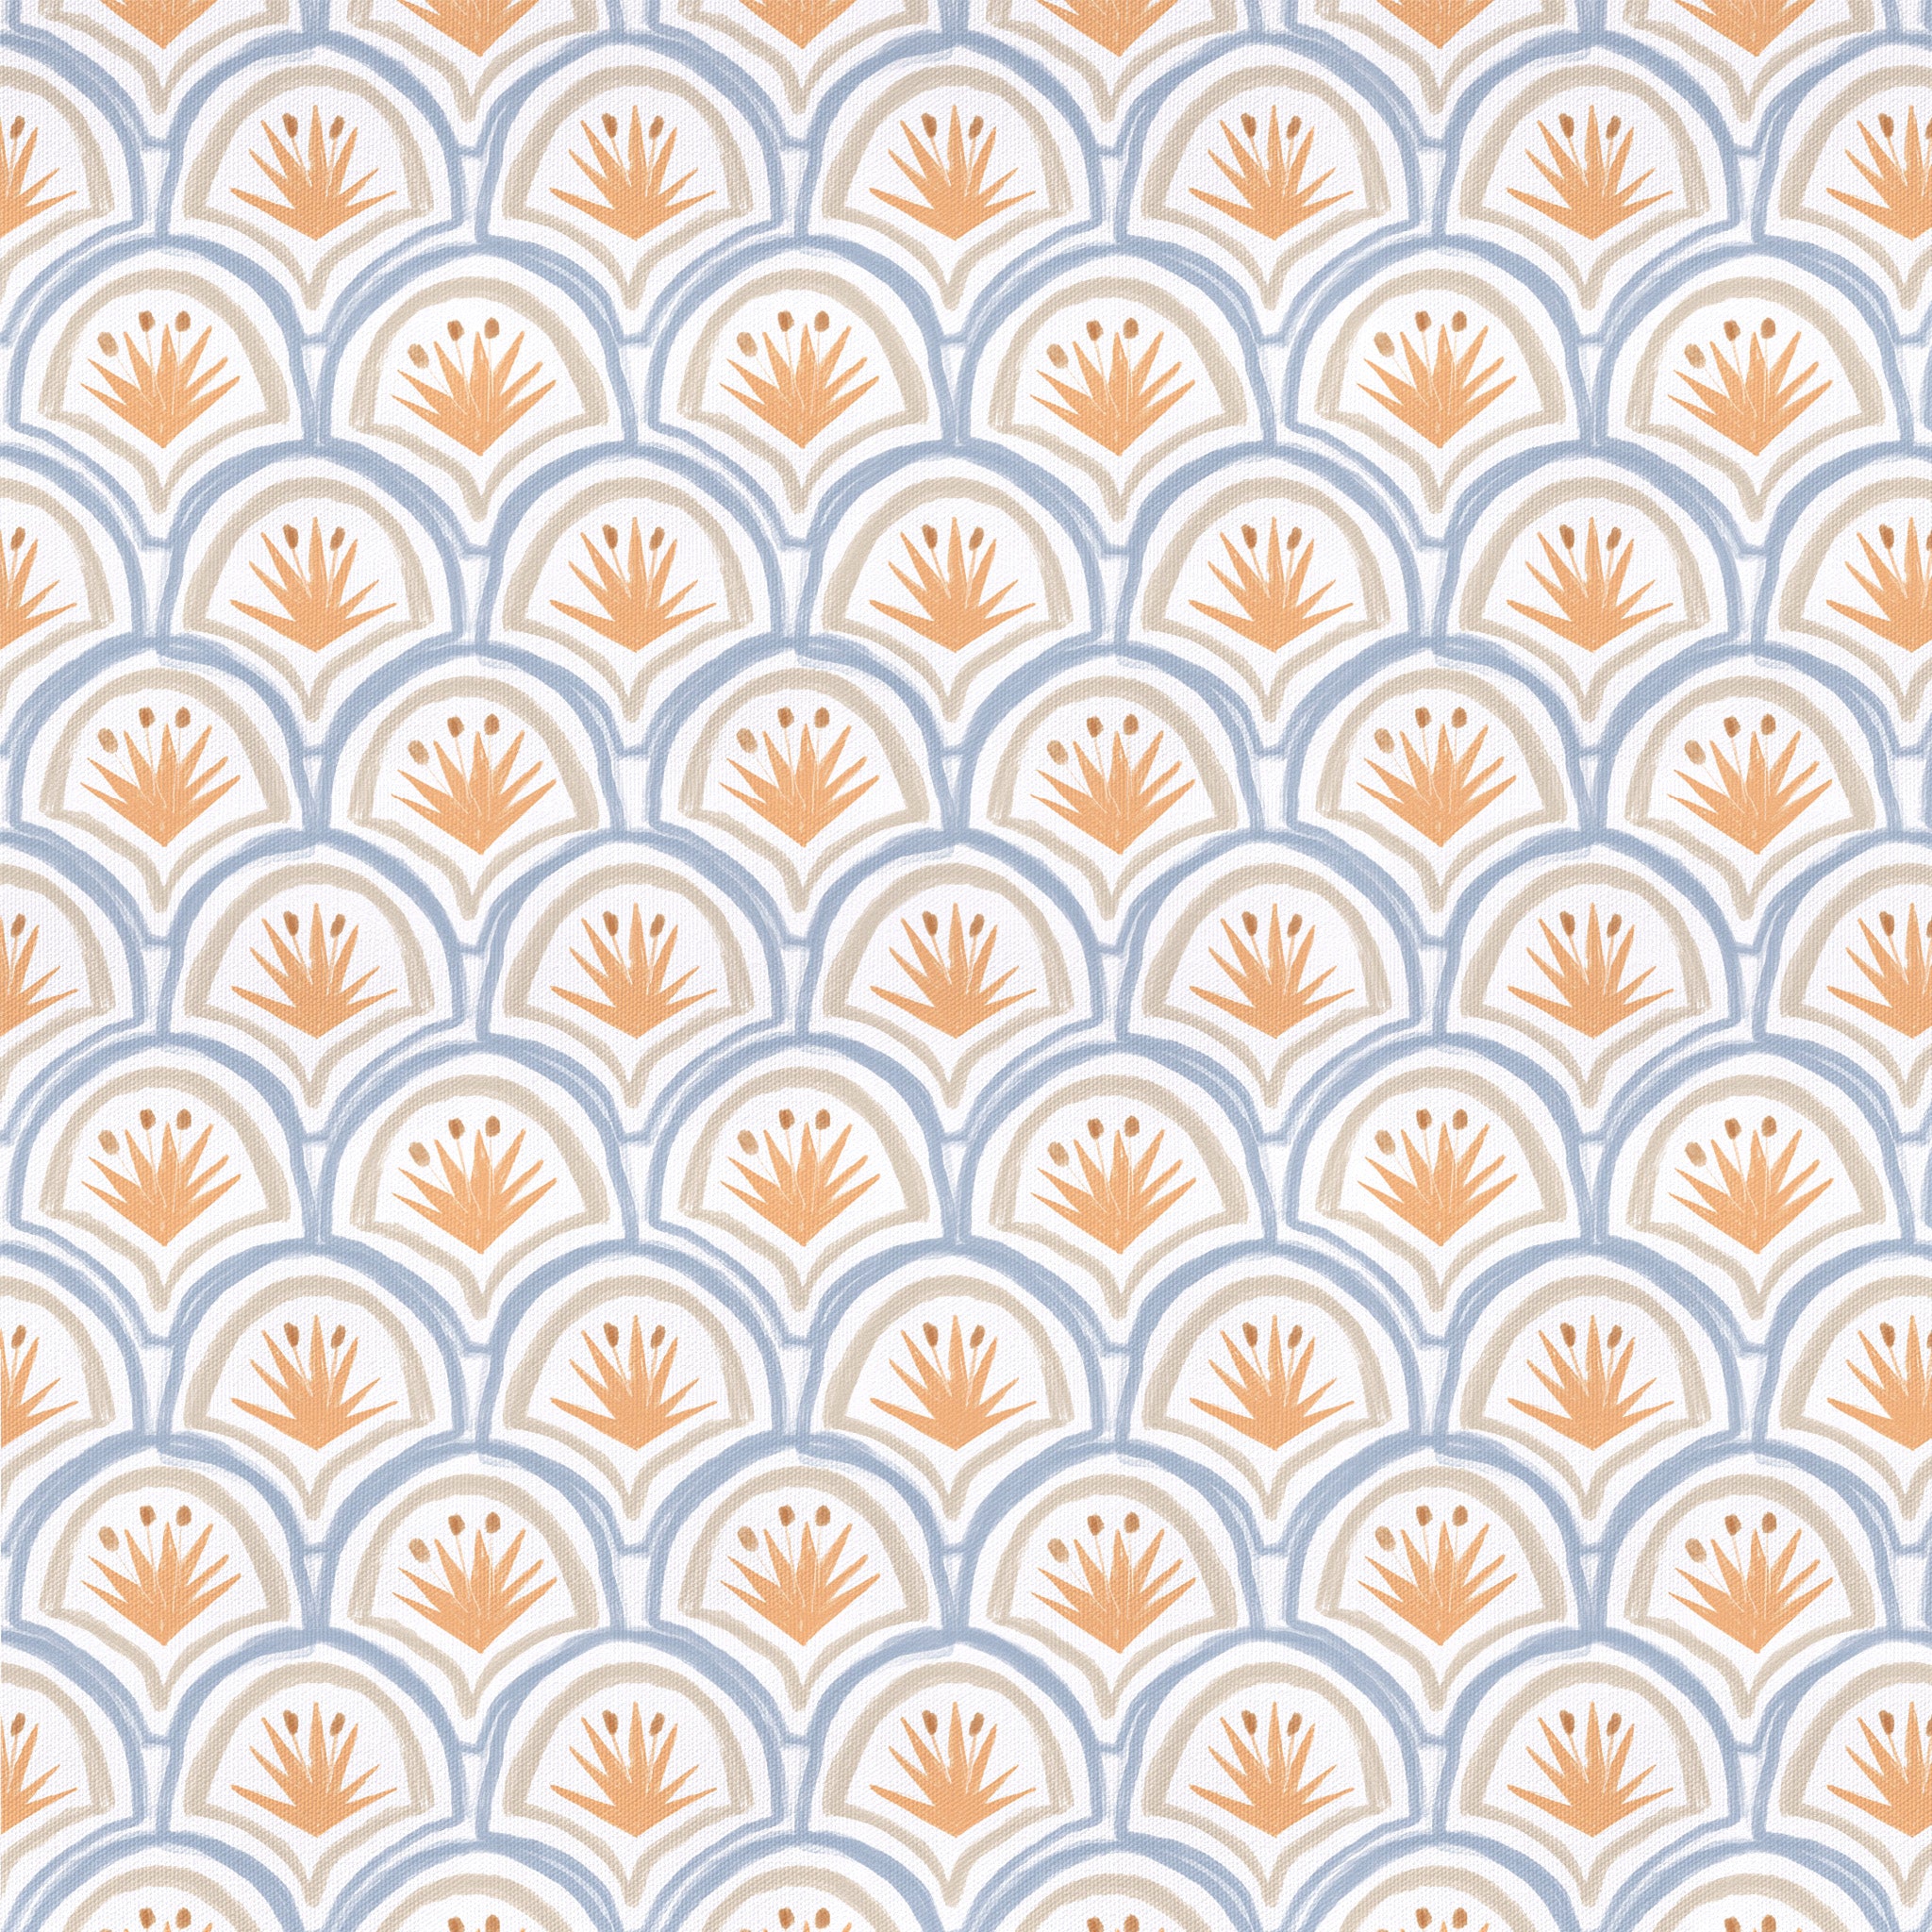 Art Deco Palm Pattern Print